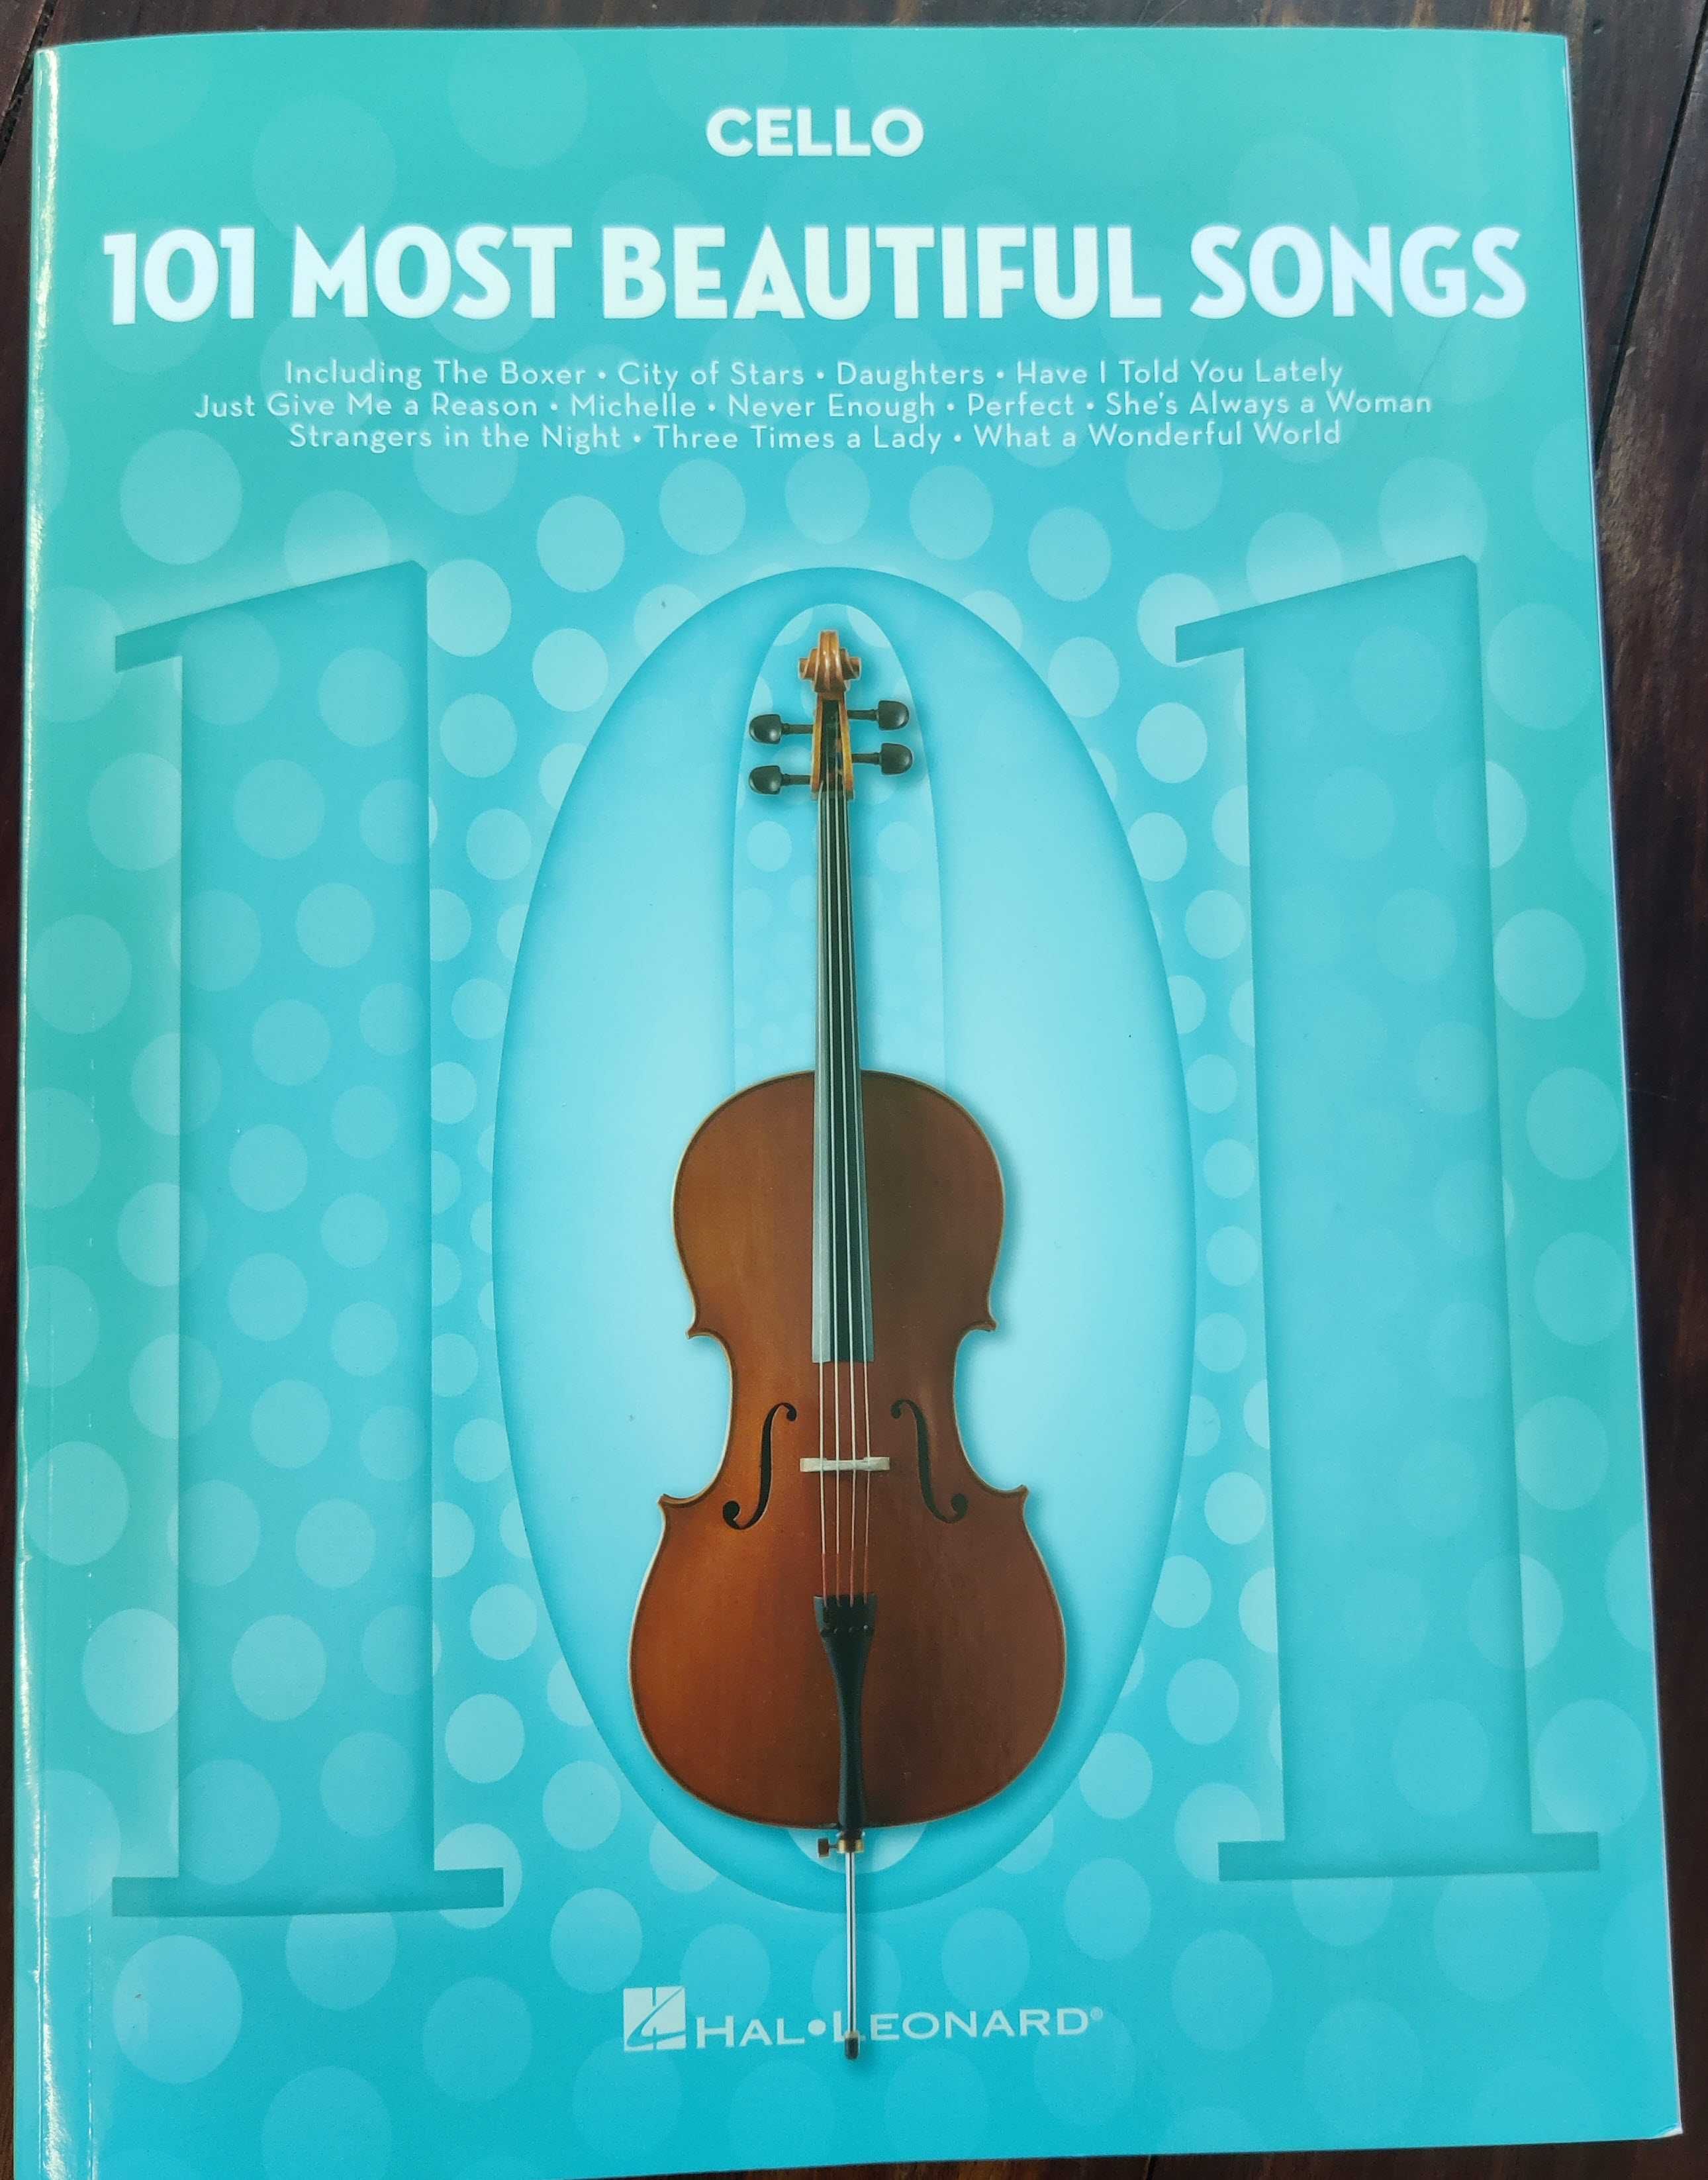 Livro com pautas musicais para Violoncelo "101 most beautiful Songs".